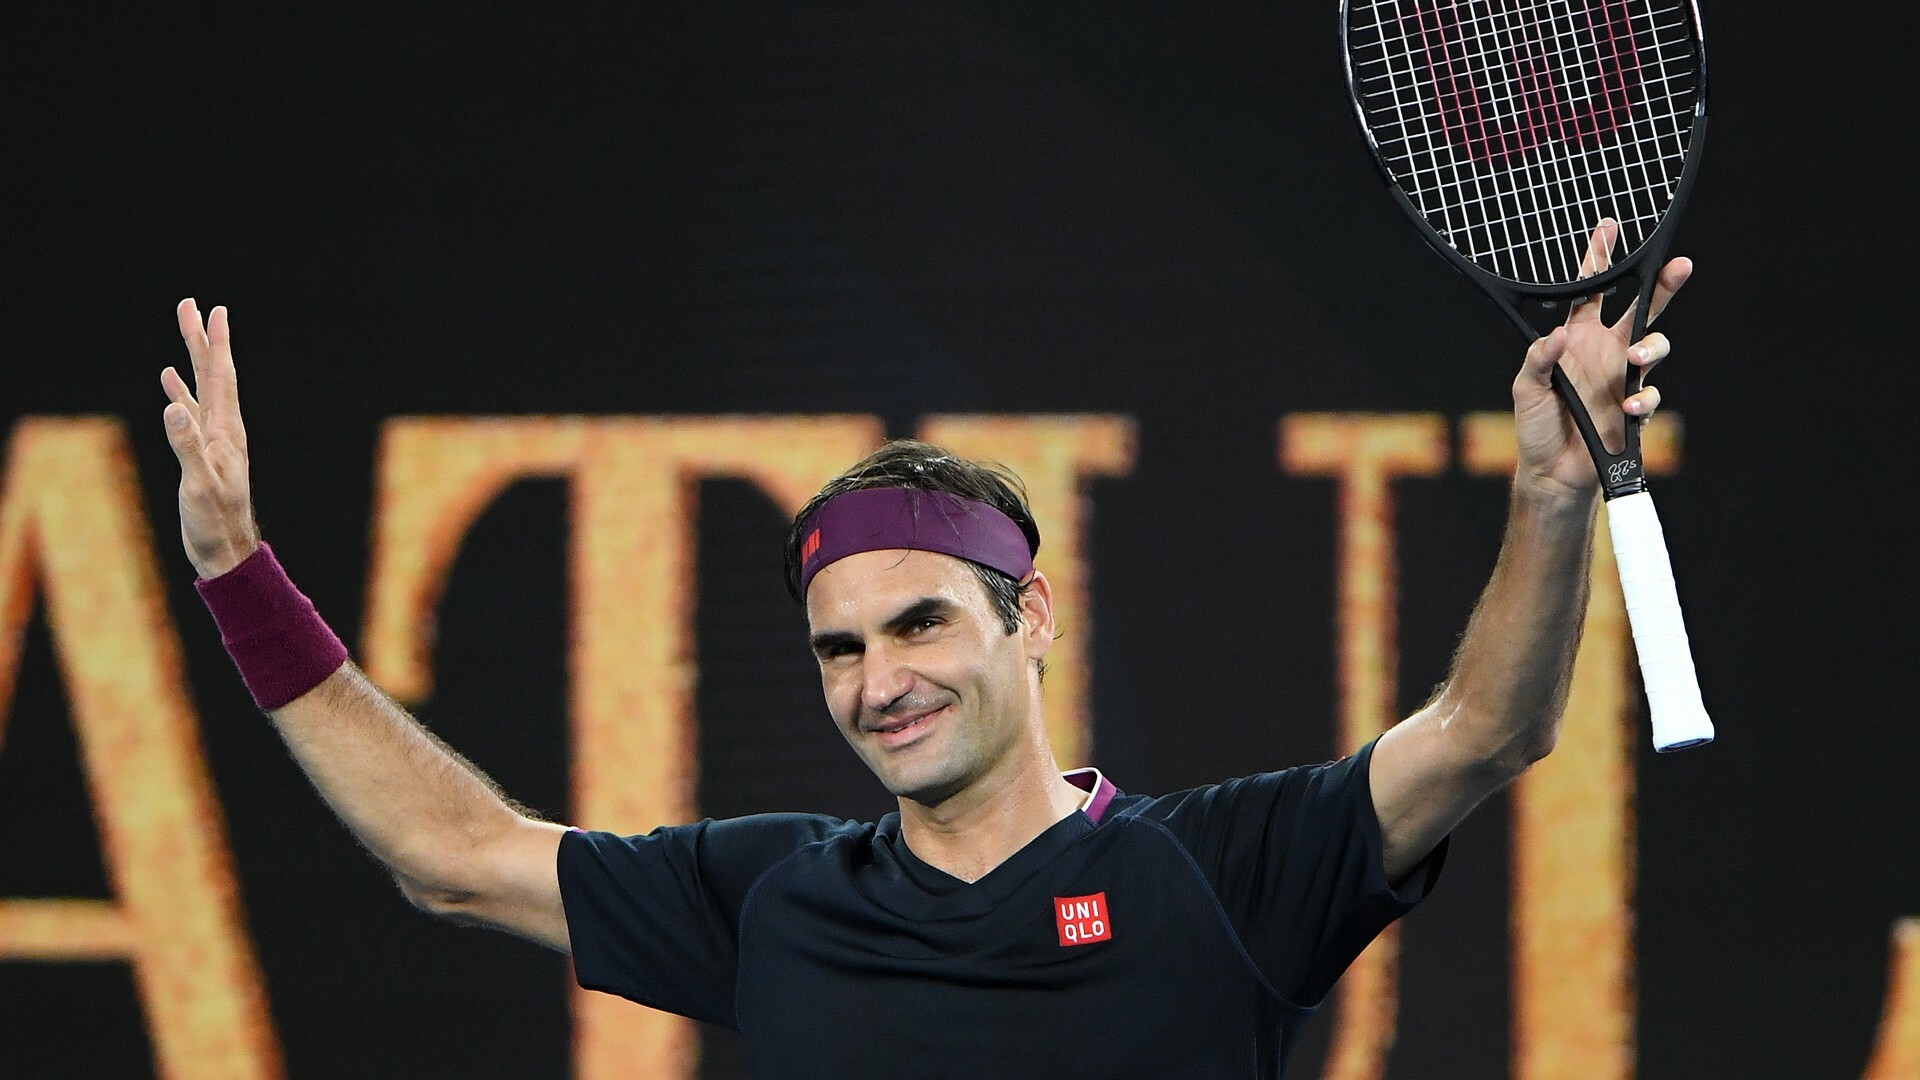 Roger Federer: He won the 2009 French Open Men's Singles final against Robin Soderling. 1920x1080 Full HD Wallpaper.